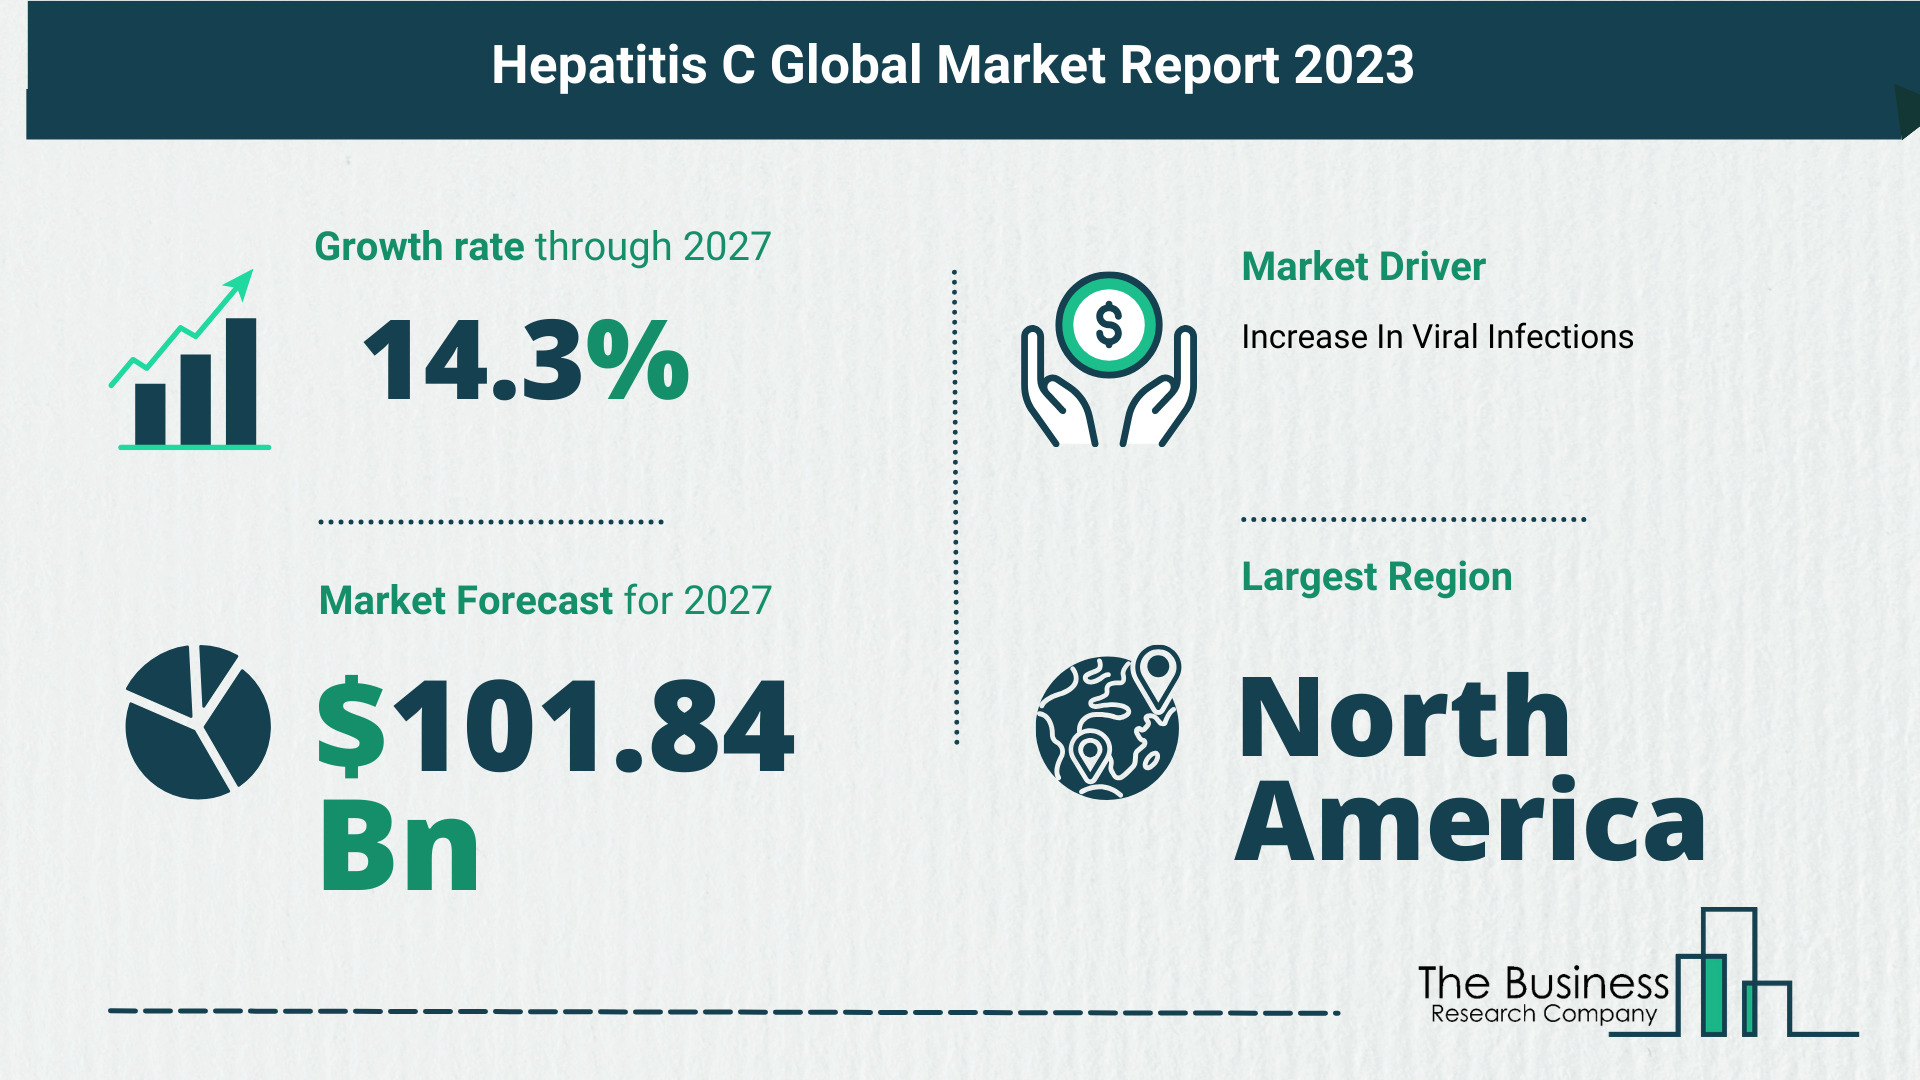 Top 5 Insights From The Hepatitis C Market Report 2023